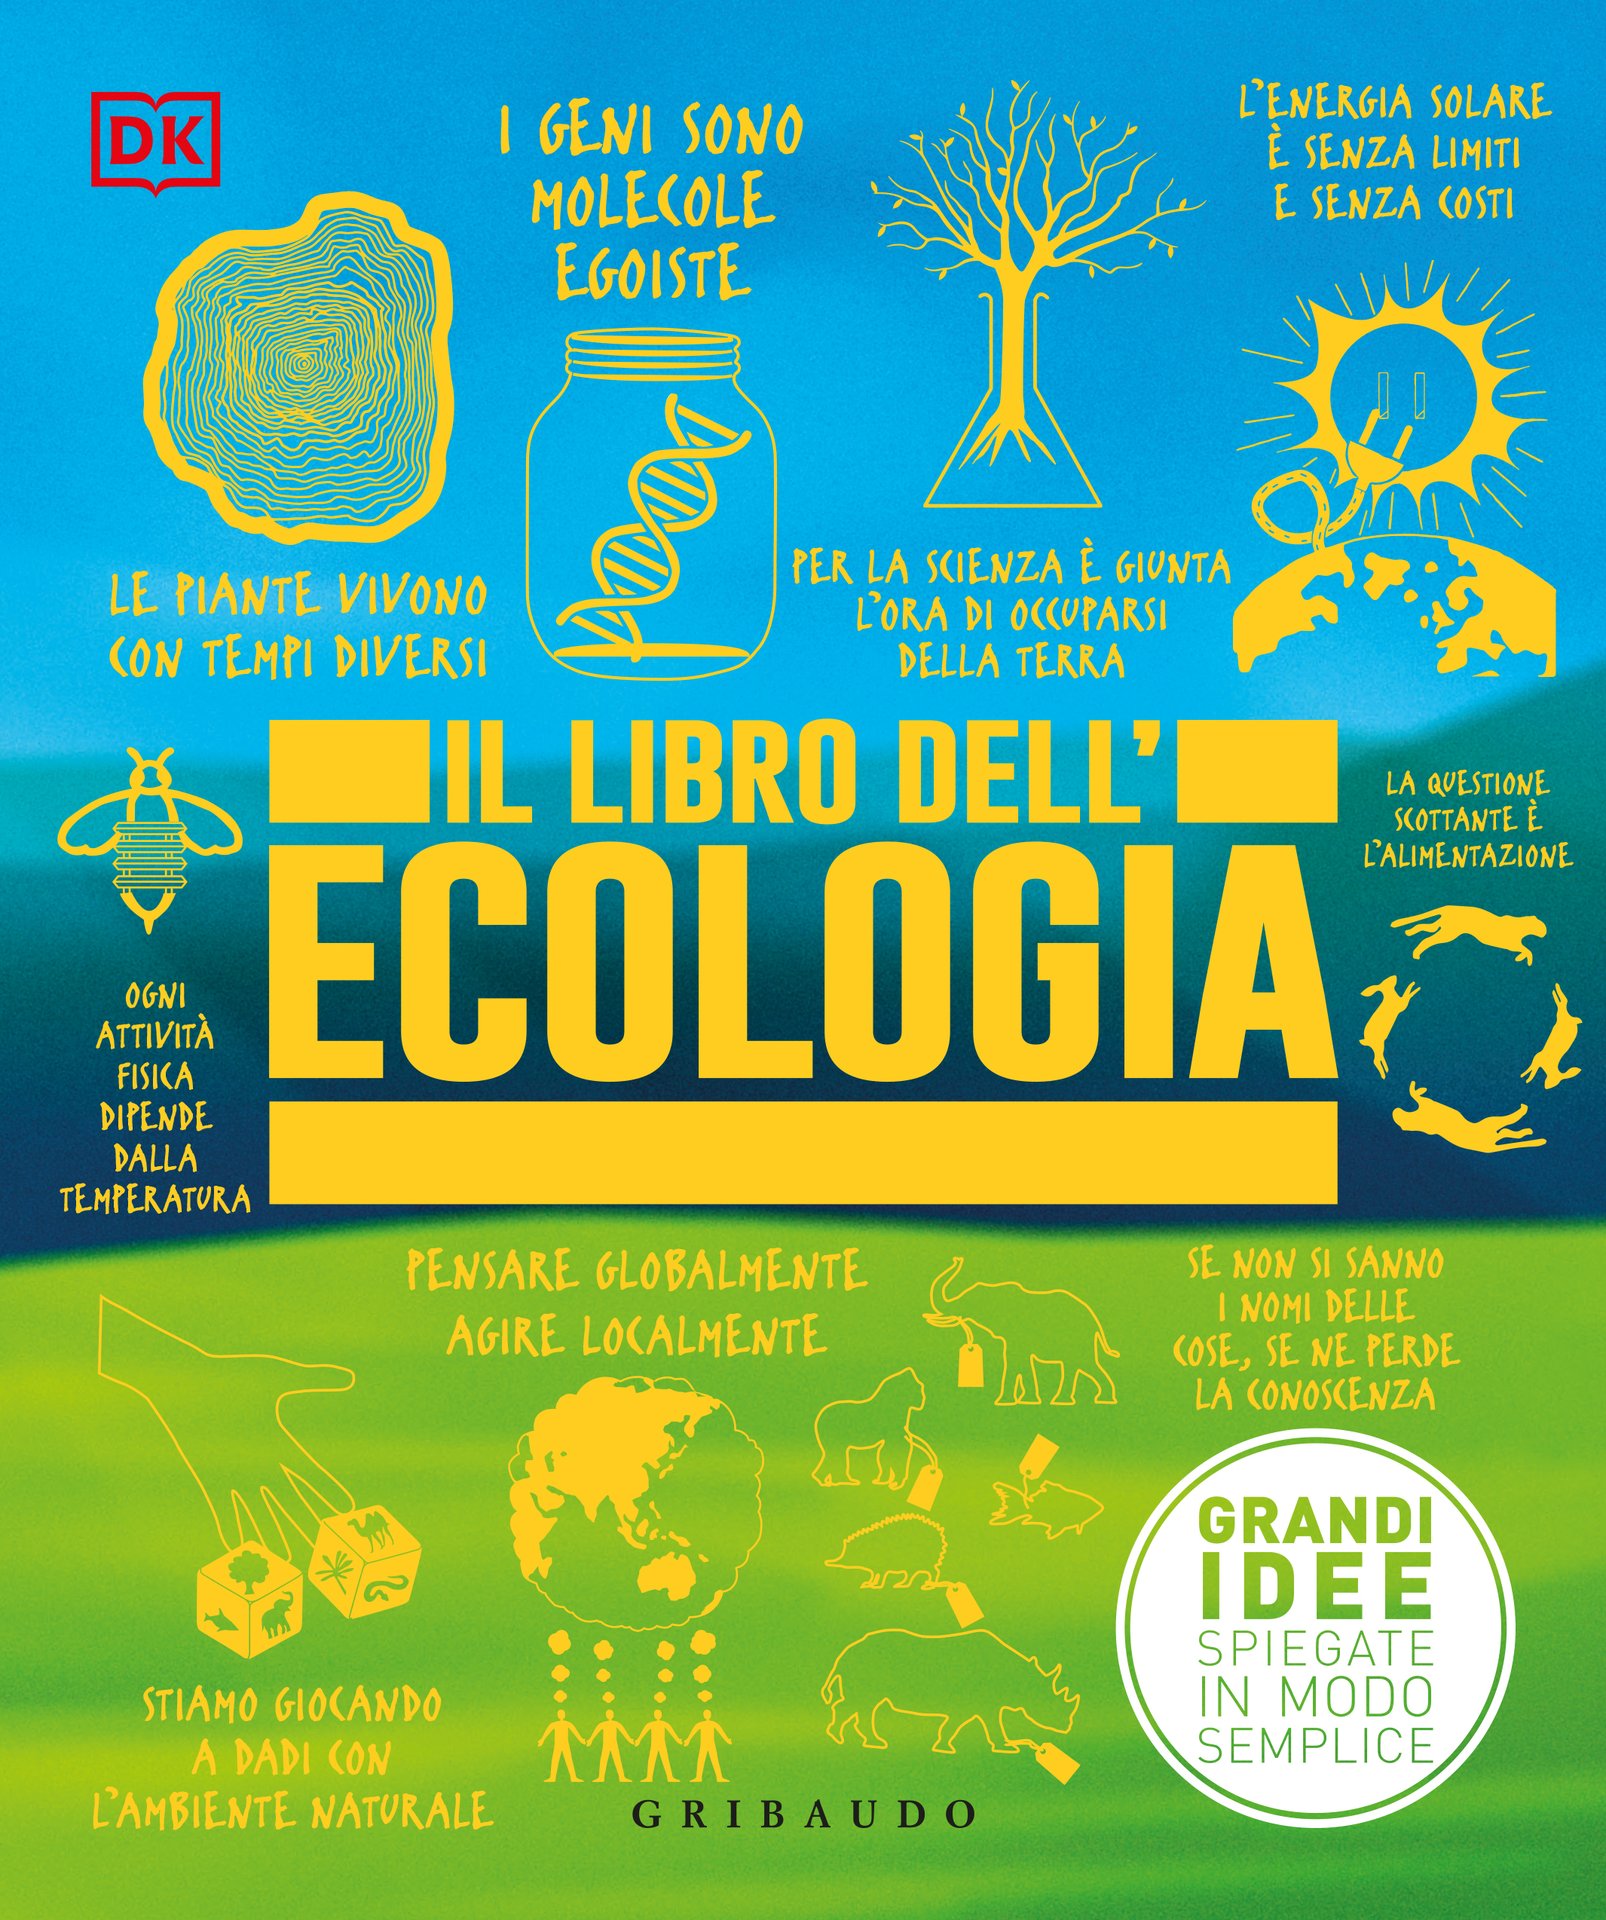 Il libro dell'ecologia